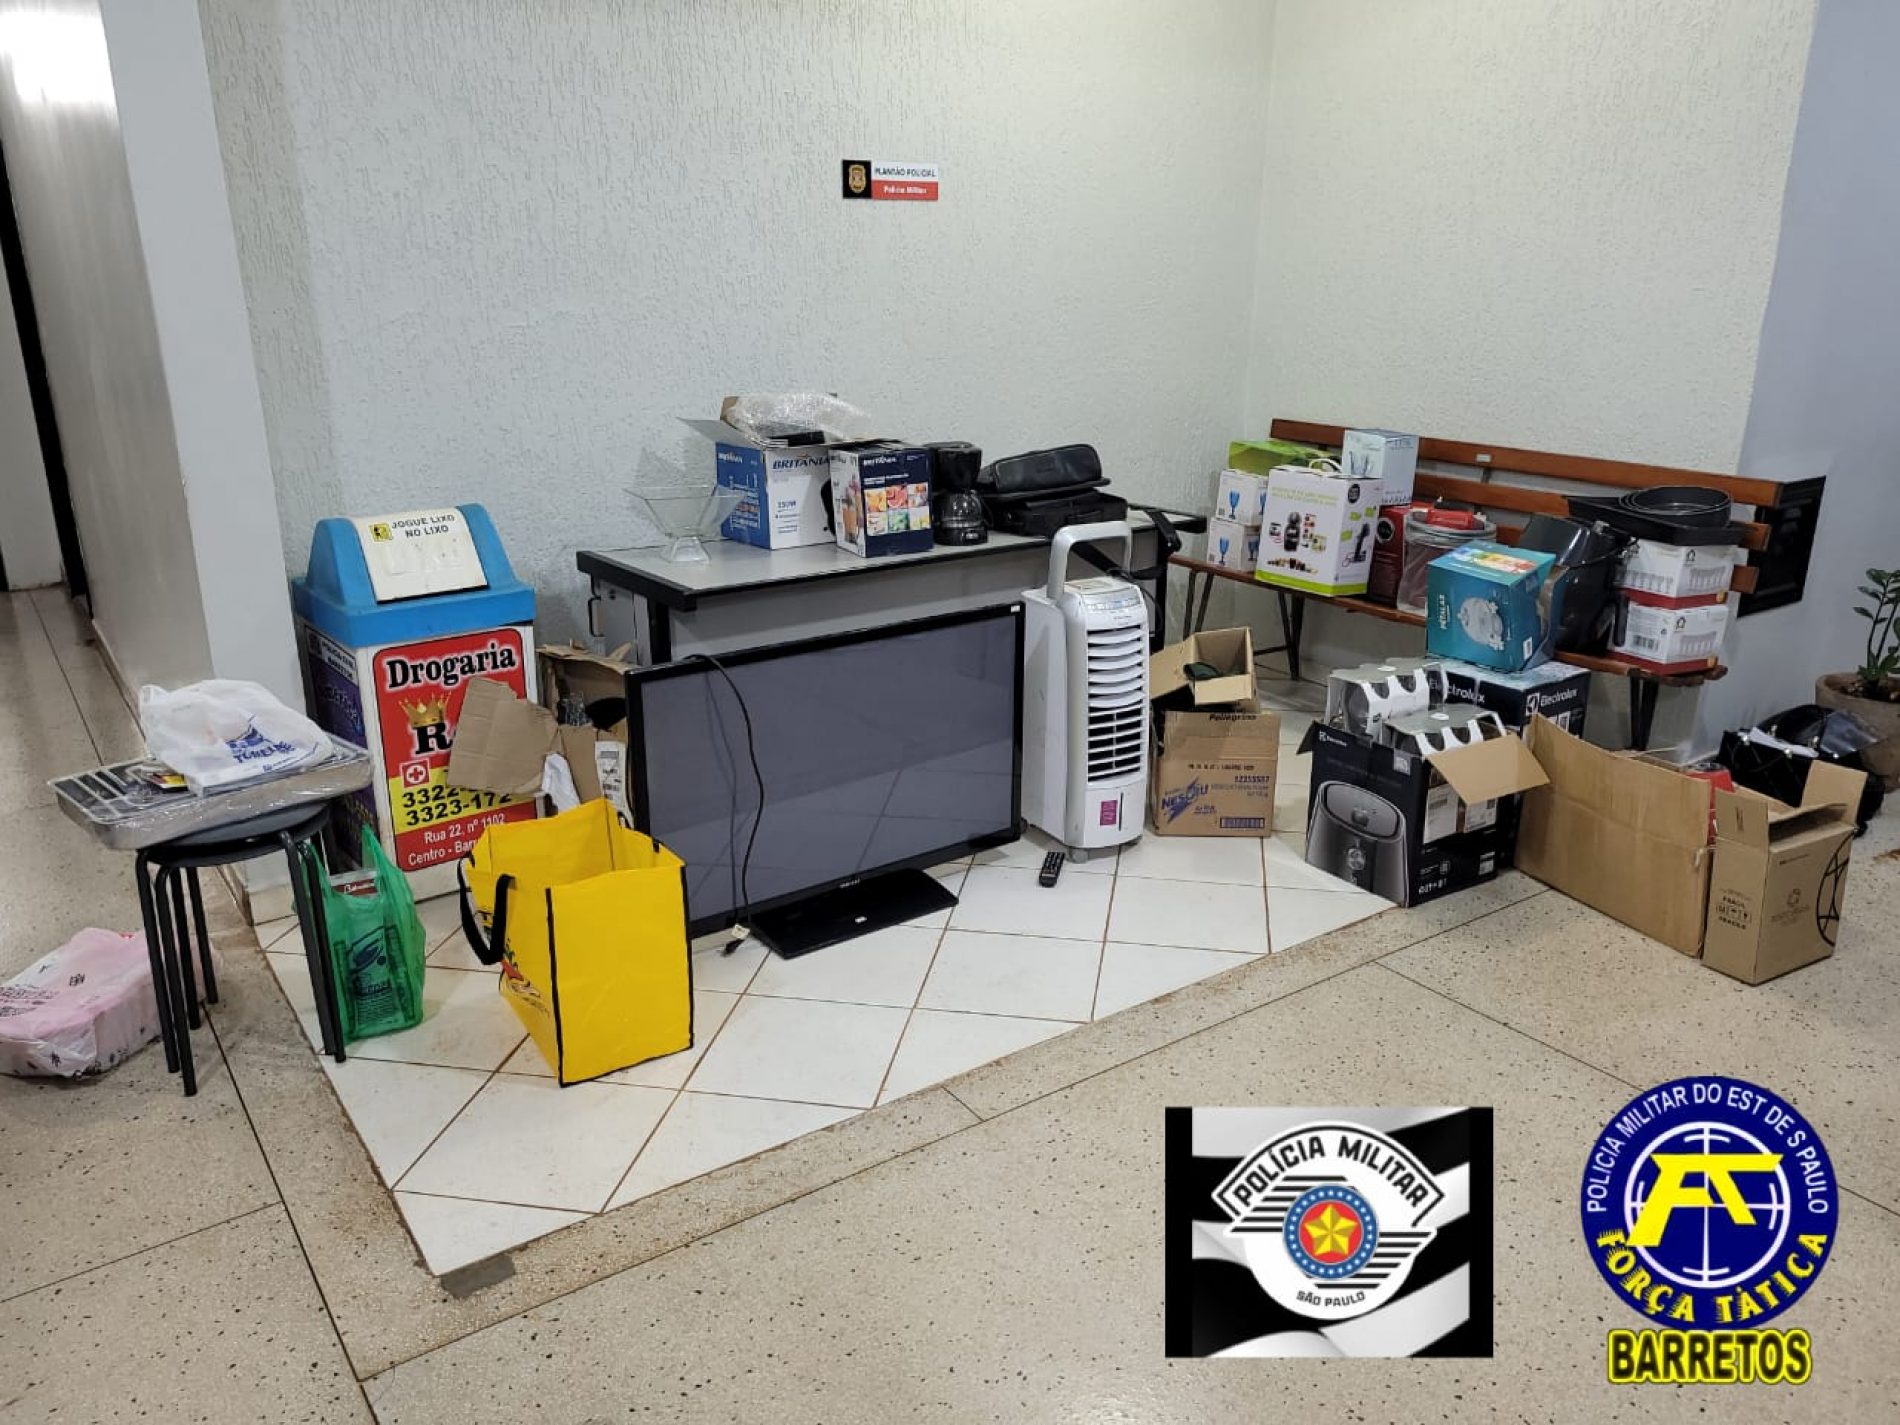 BARRETOS: Policia Militar apreende diversos objetos suspeitos em residência no bairro Vida Nova 4